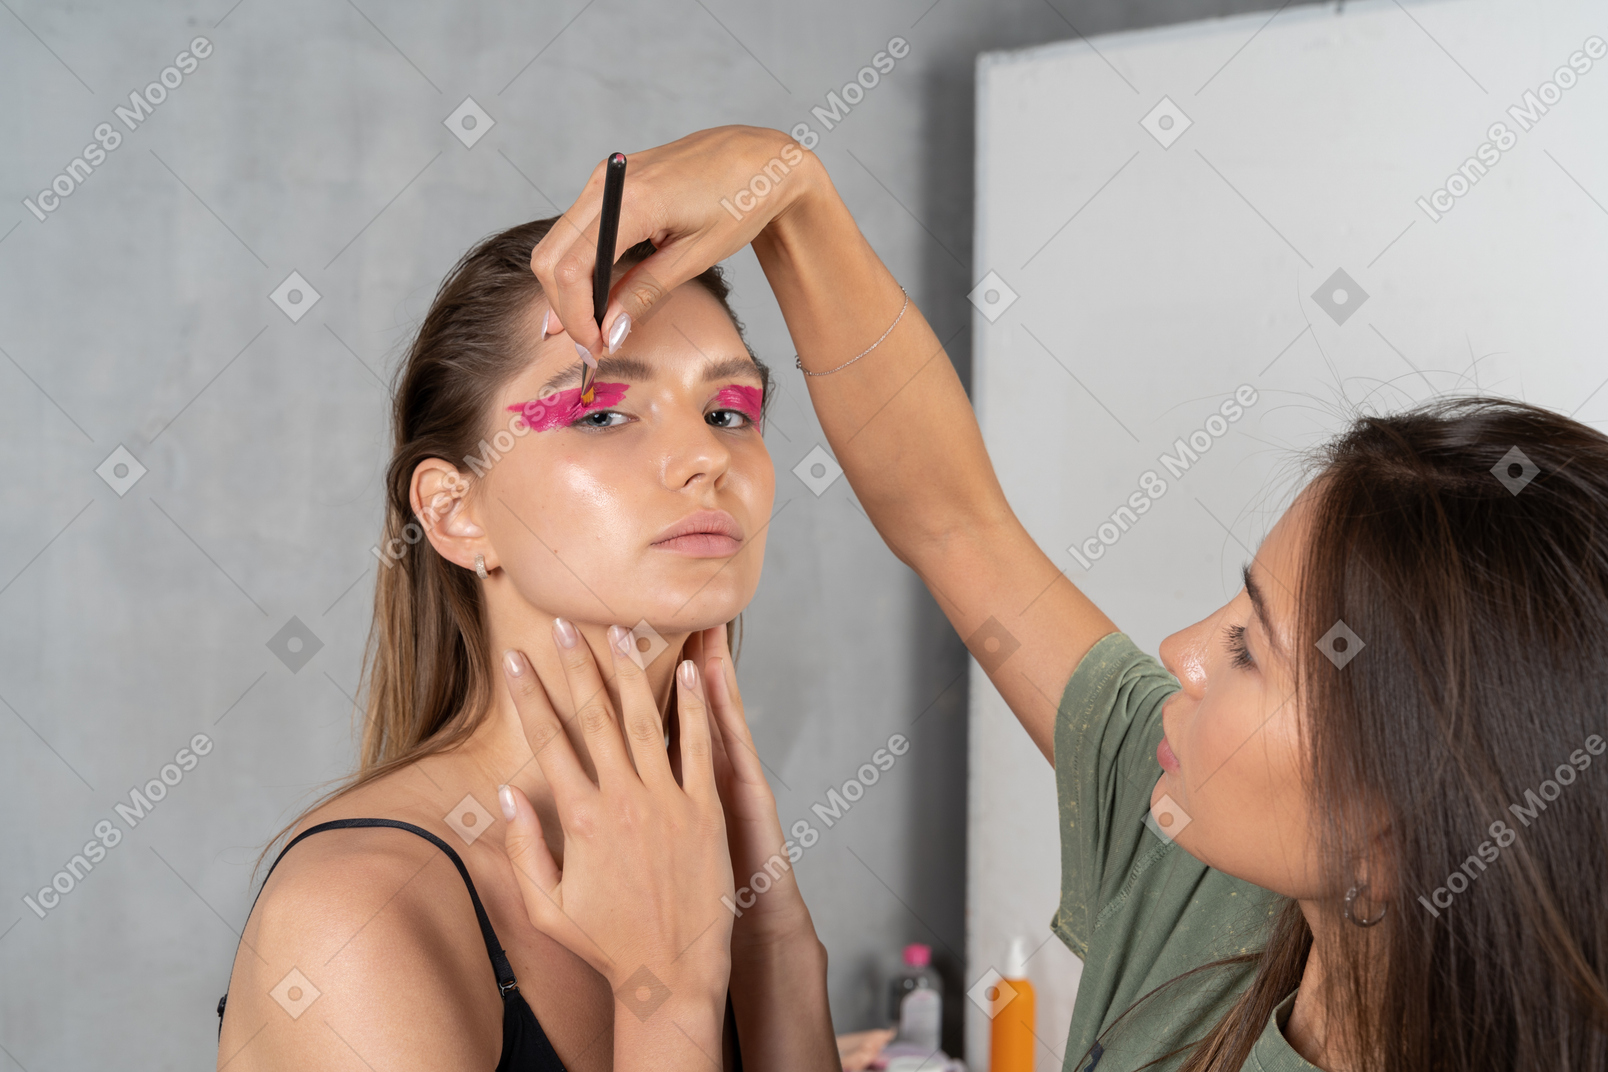 Vista de três quartos de uma jovem com maquiagem de olhos rosa brilhante e seu maquiador